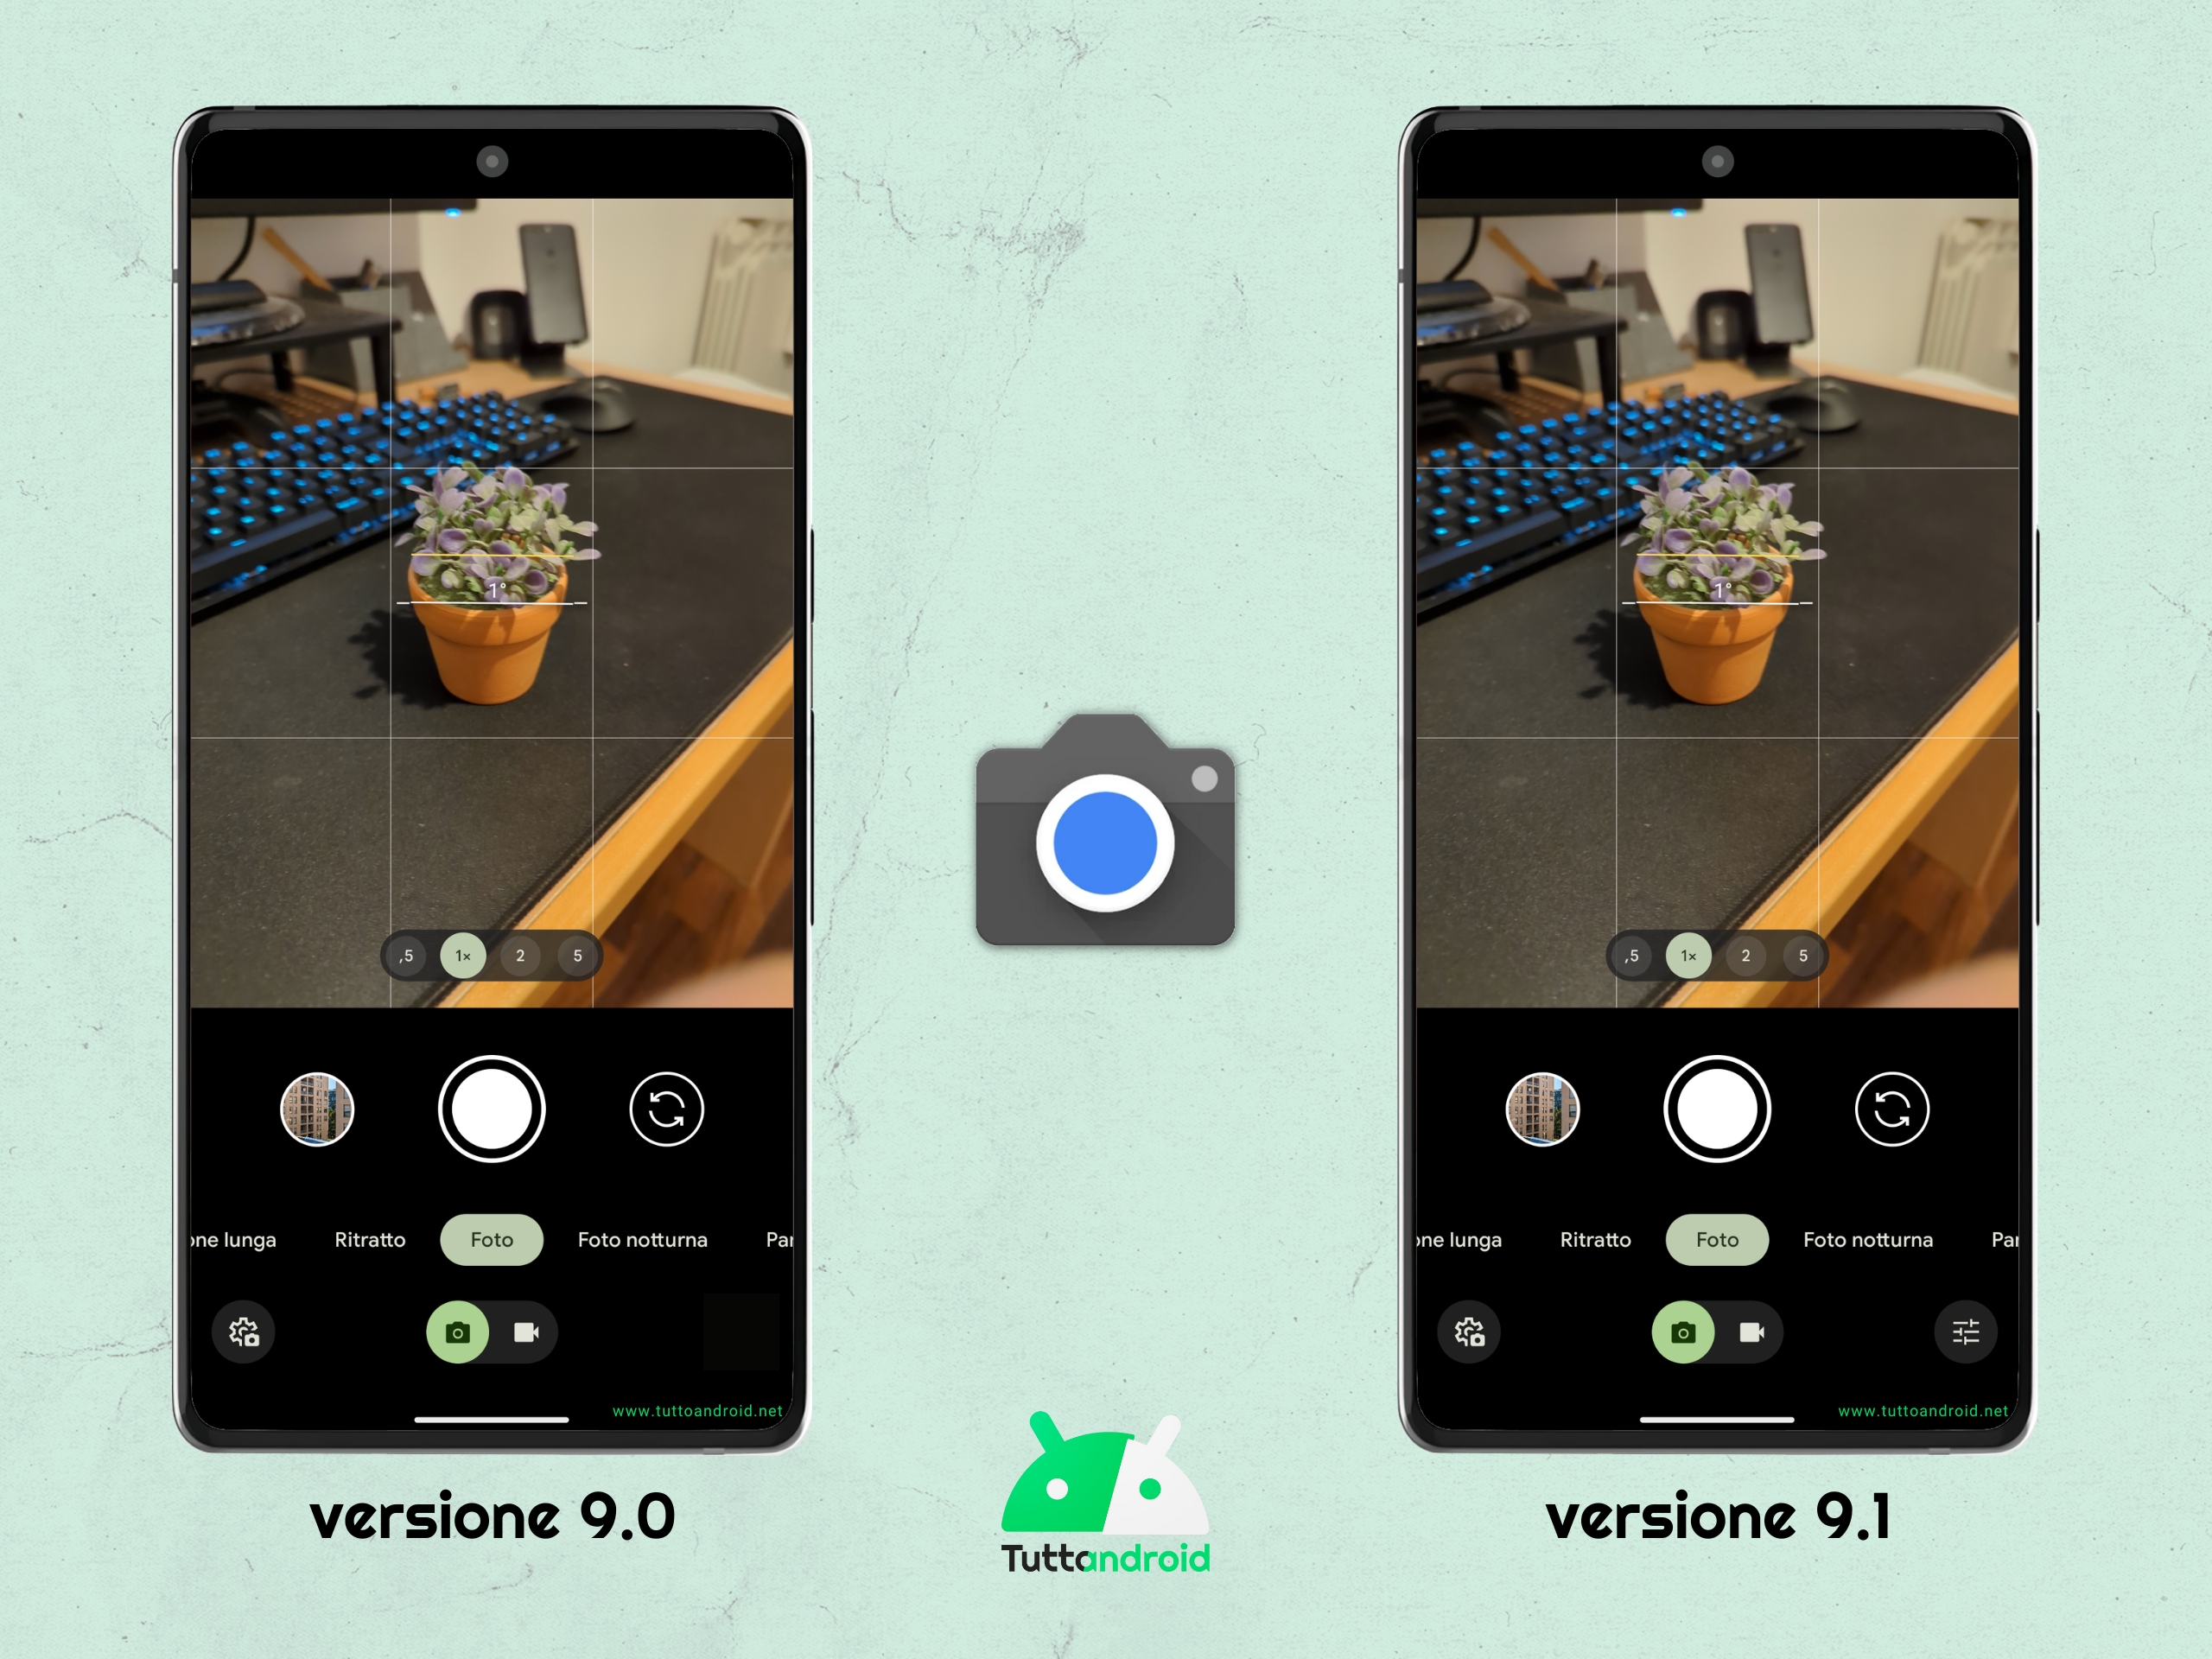 Google Fotocamera - interfaccia a confronto tra la versione 9.0 e la versione 9.1